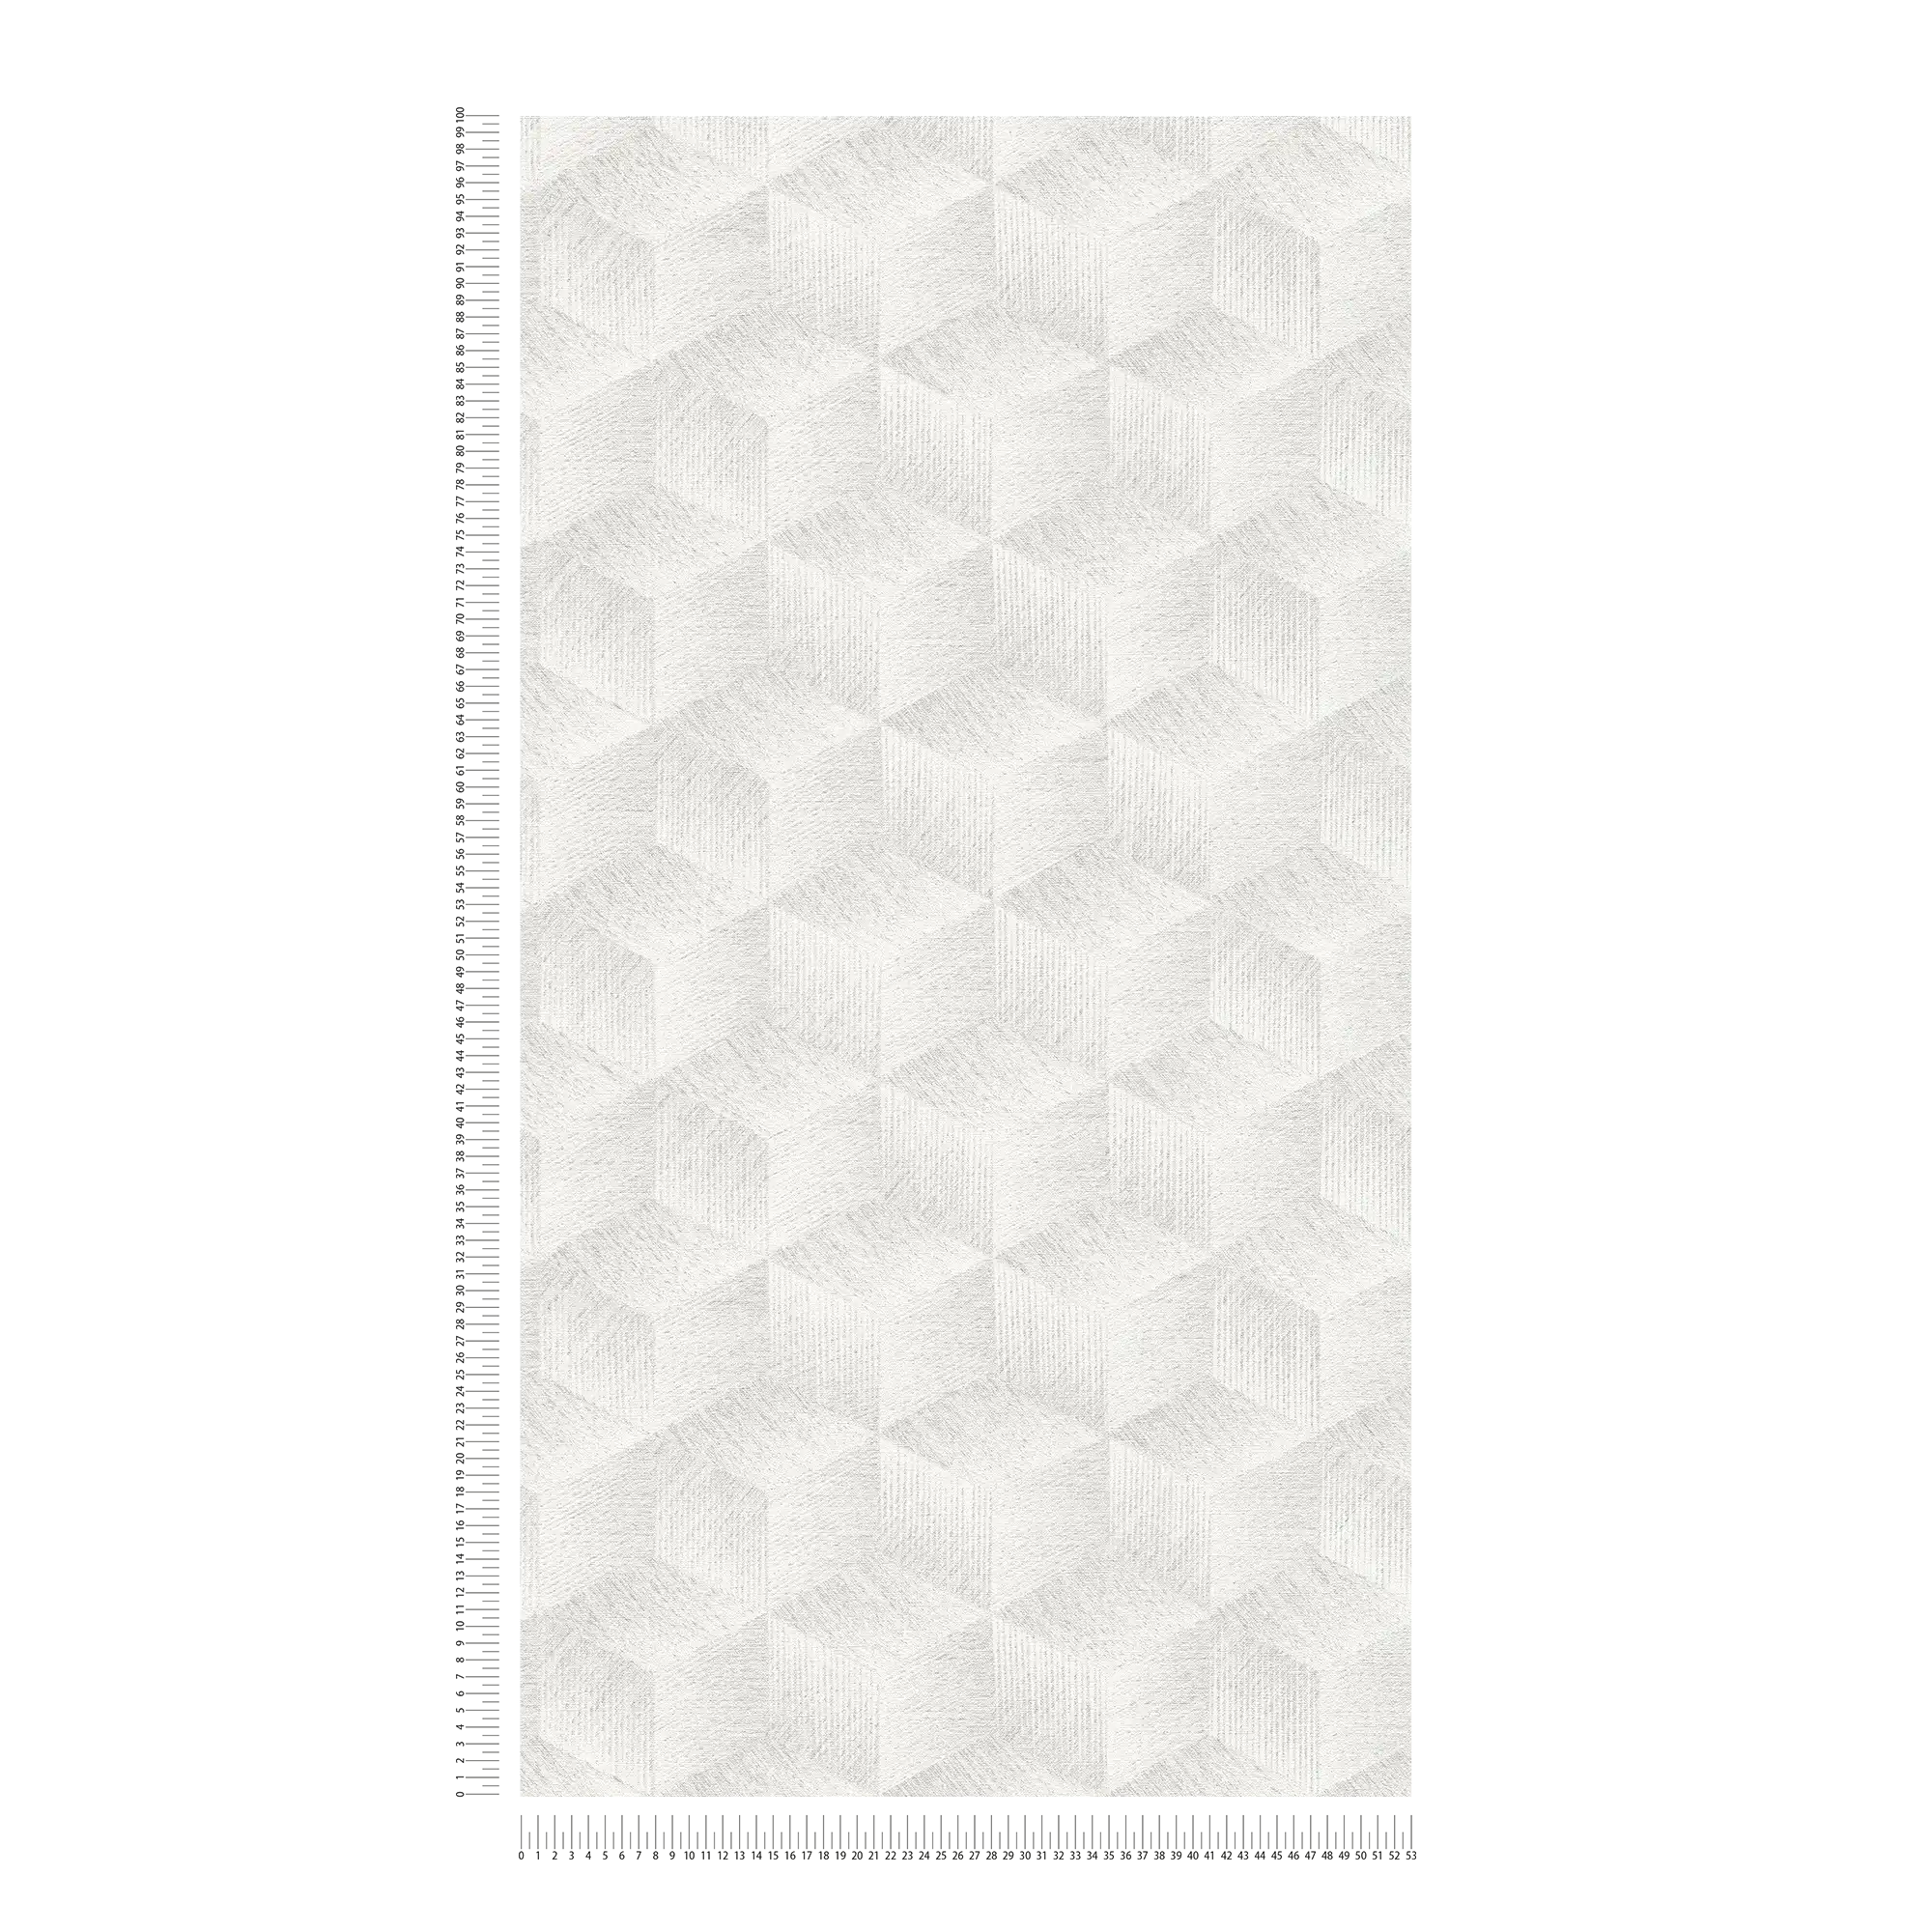             Carta da parati ottica 3D senza PVC con motivo quadrato ed effetto lucido - Grigio, Bianco
        